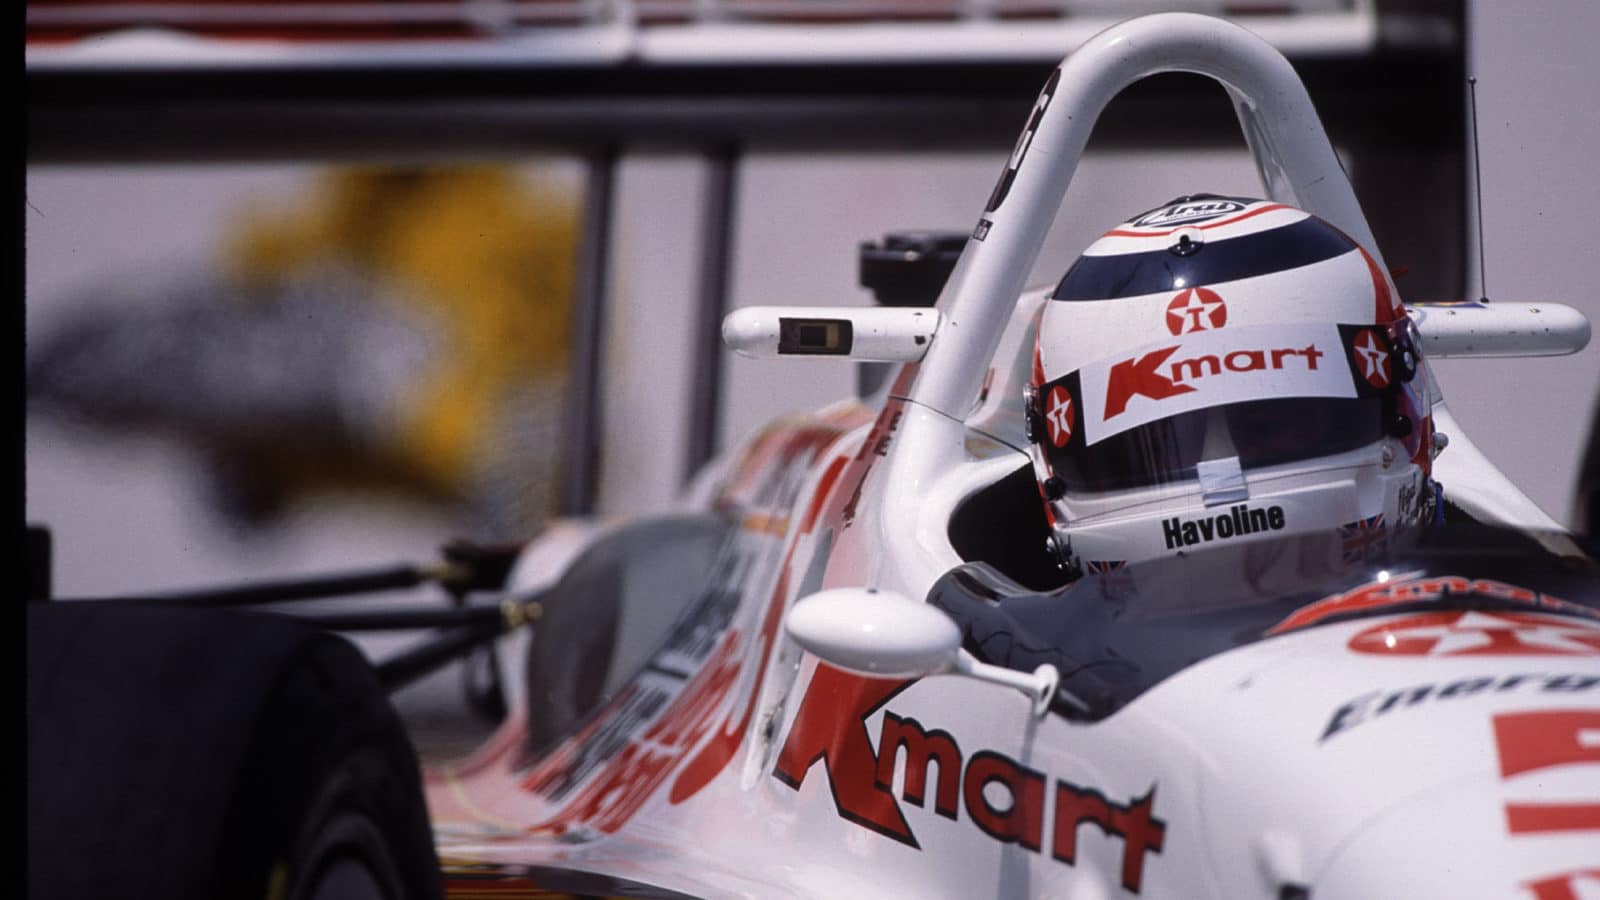 Nigel Mansell CART Newman:Haas 1993